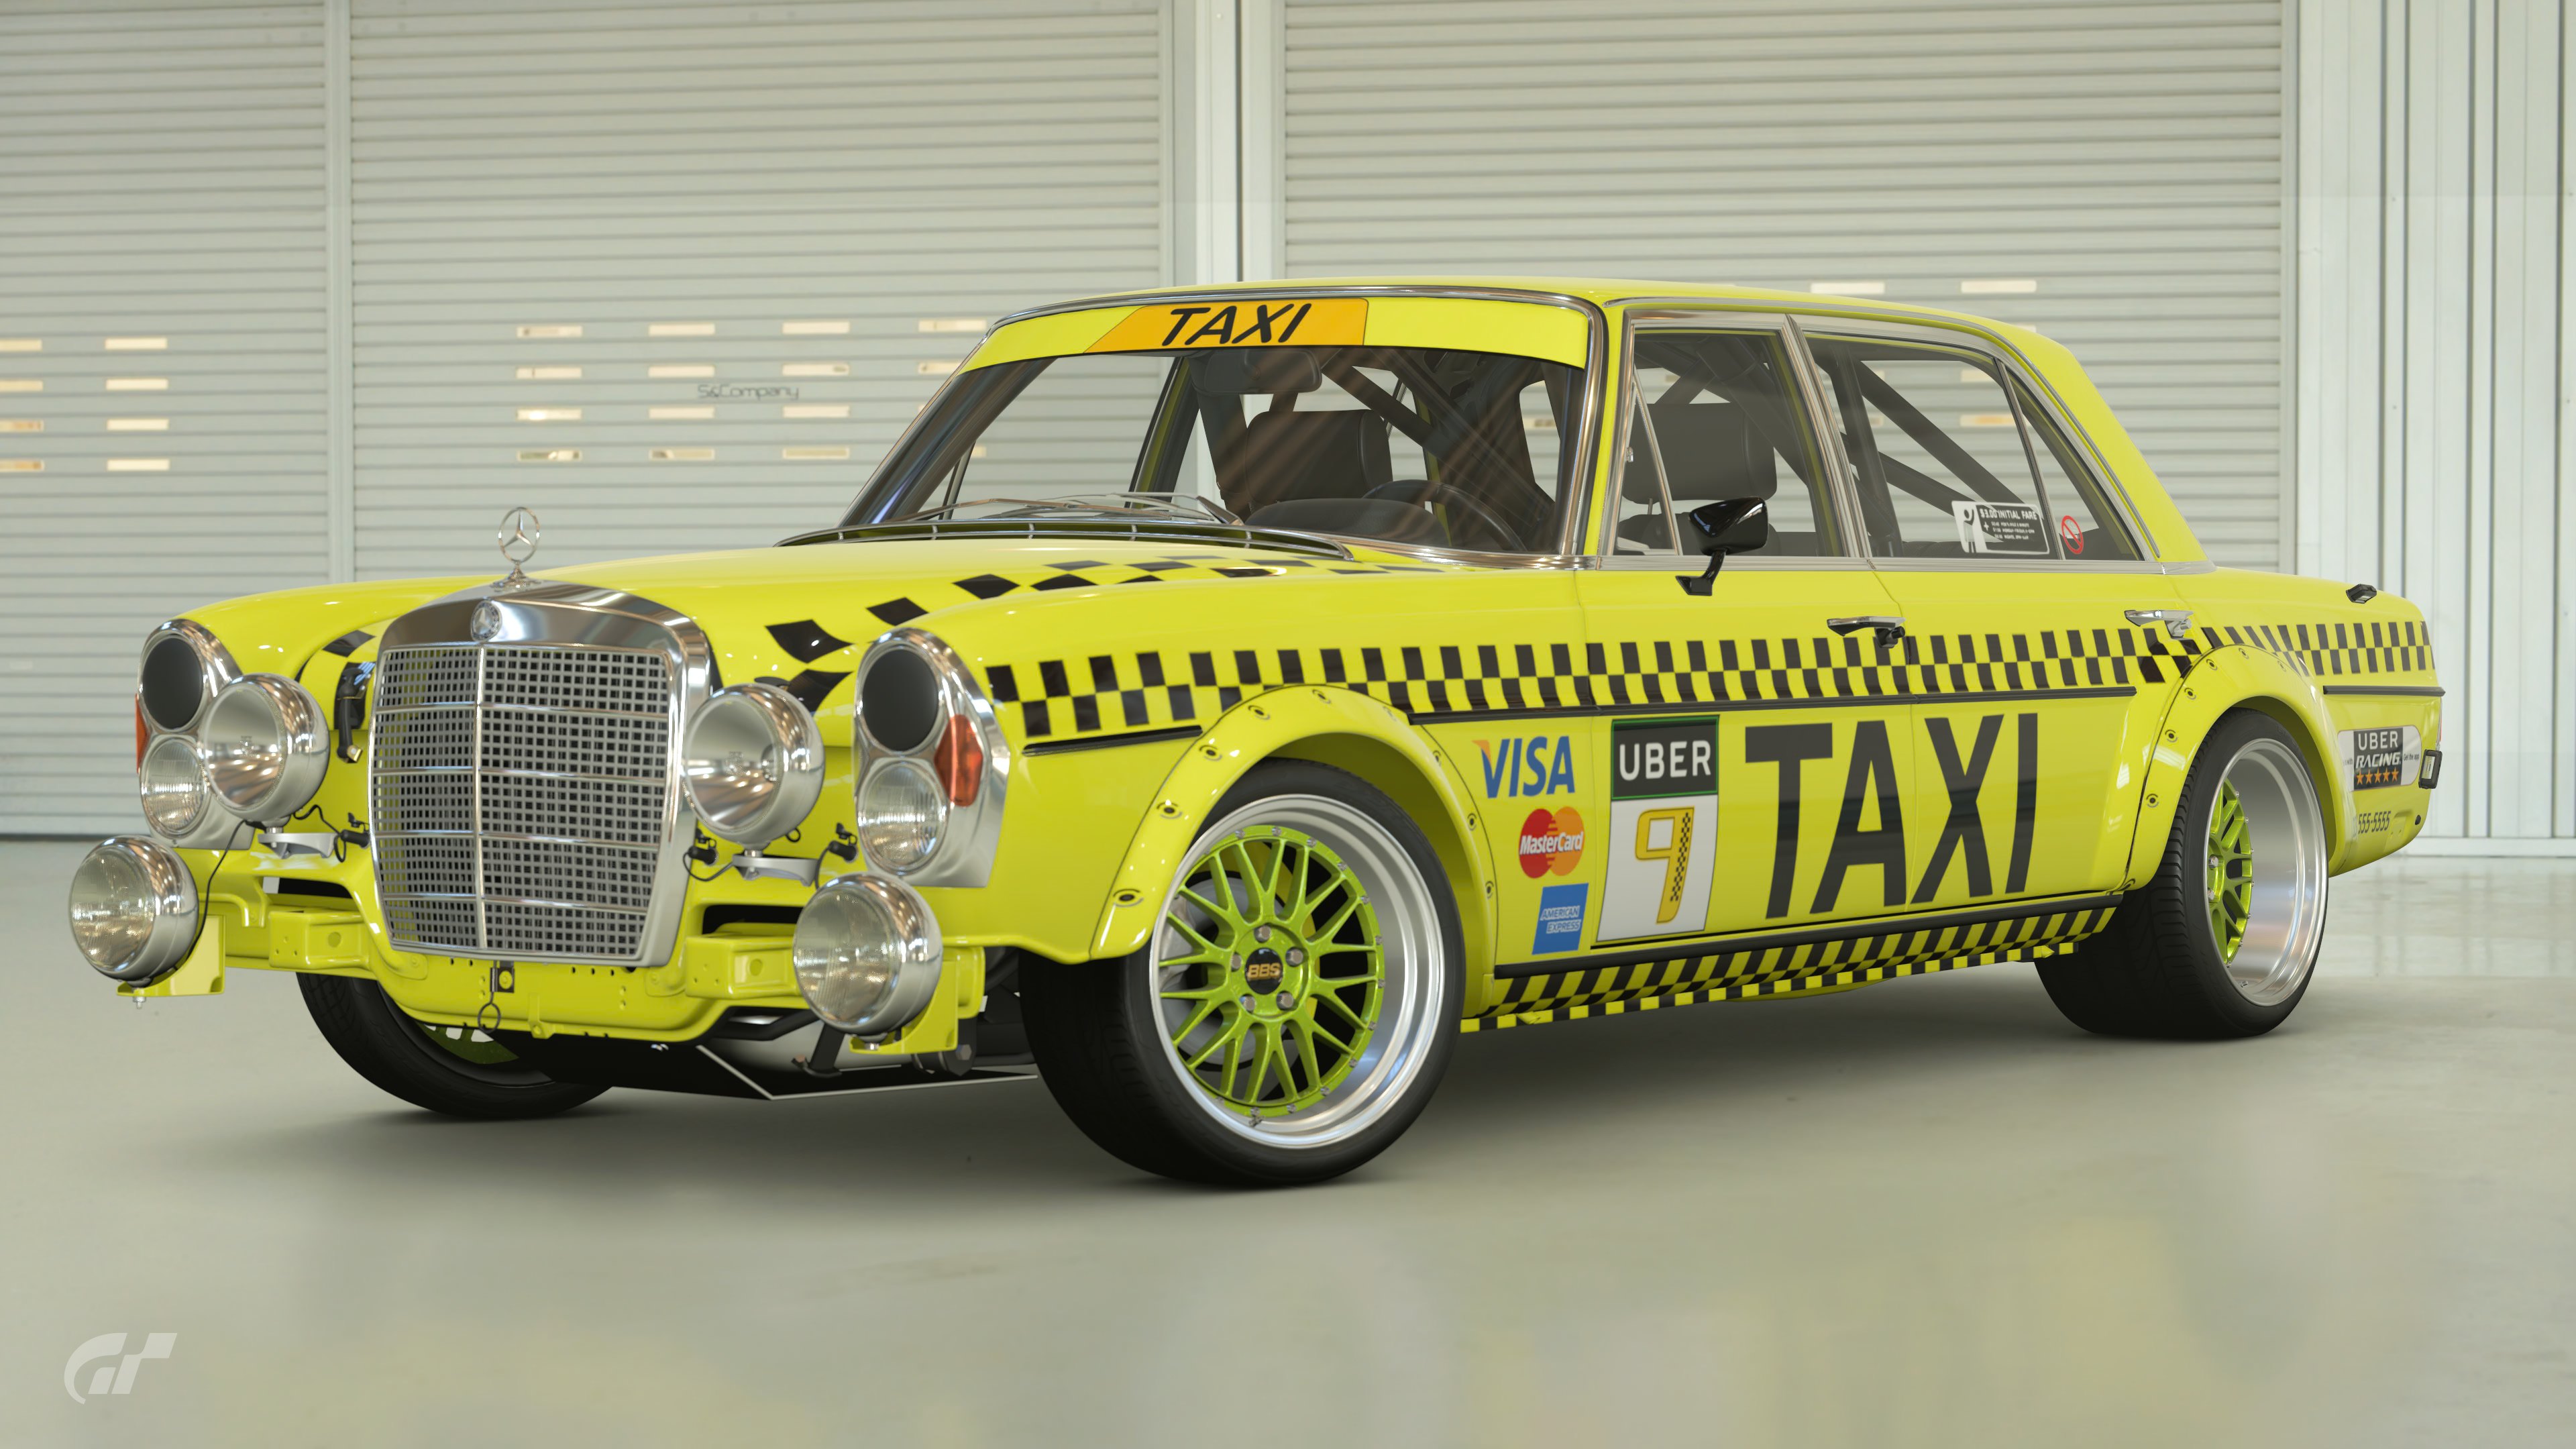 Fare Racer - Taxi